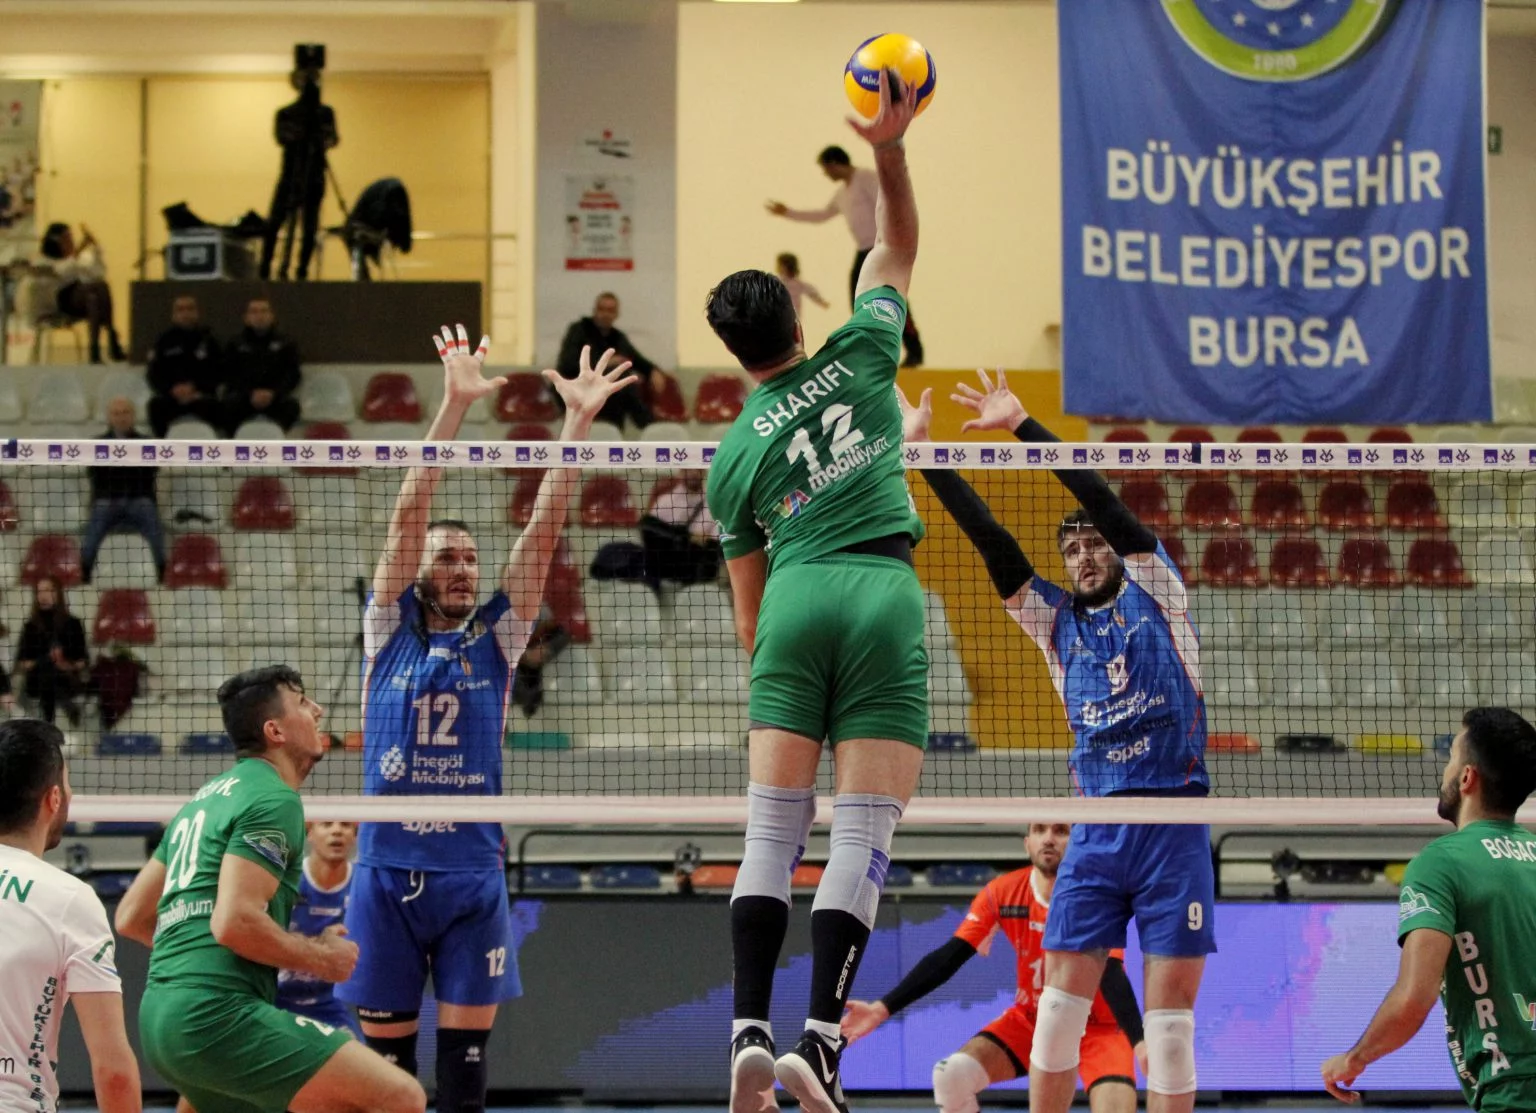 Bursa Büyükşehir Belediyespor, Kupa Voley'de final etabına yükseldi